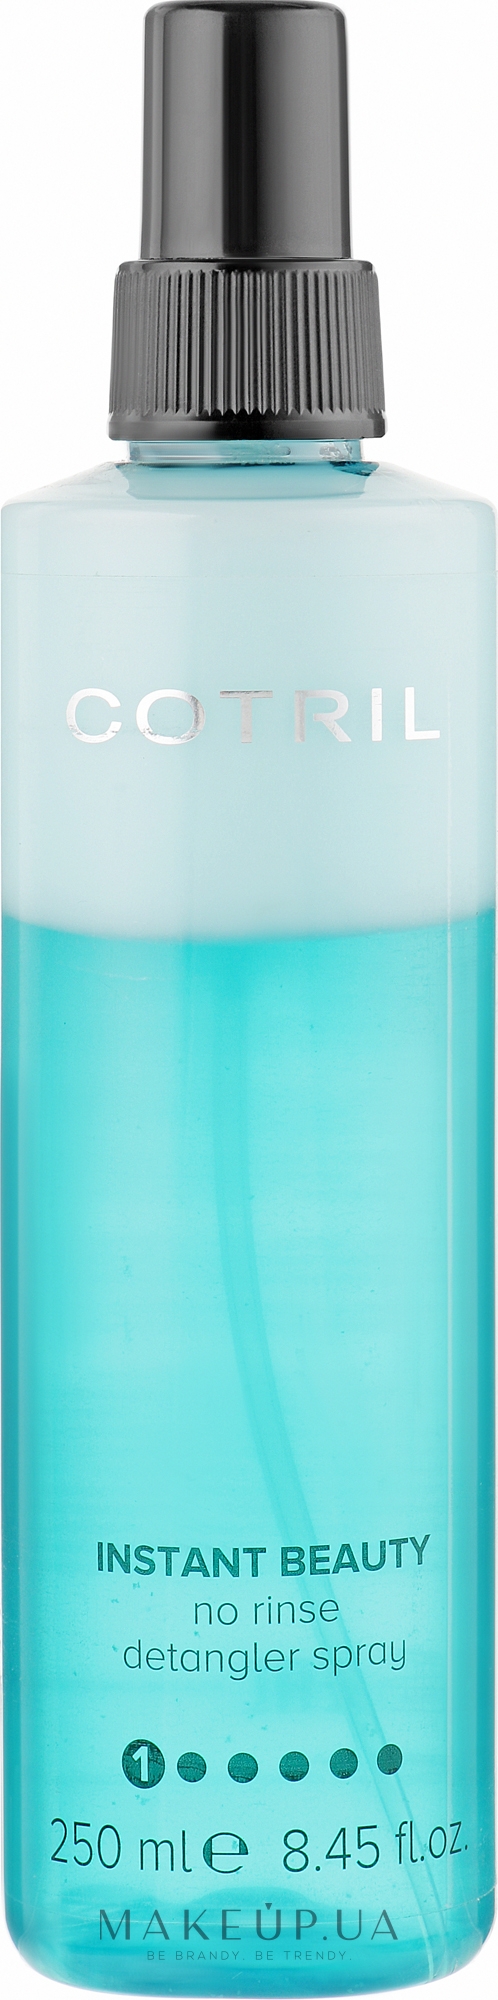 Спрей для волос, увлажнения и питания - Cotril Instant Beauty Detangler Spray — фото 250ml